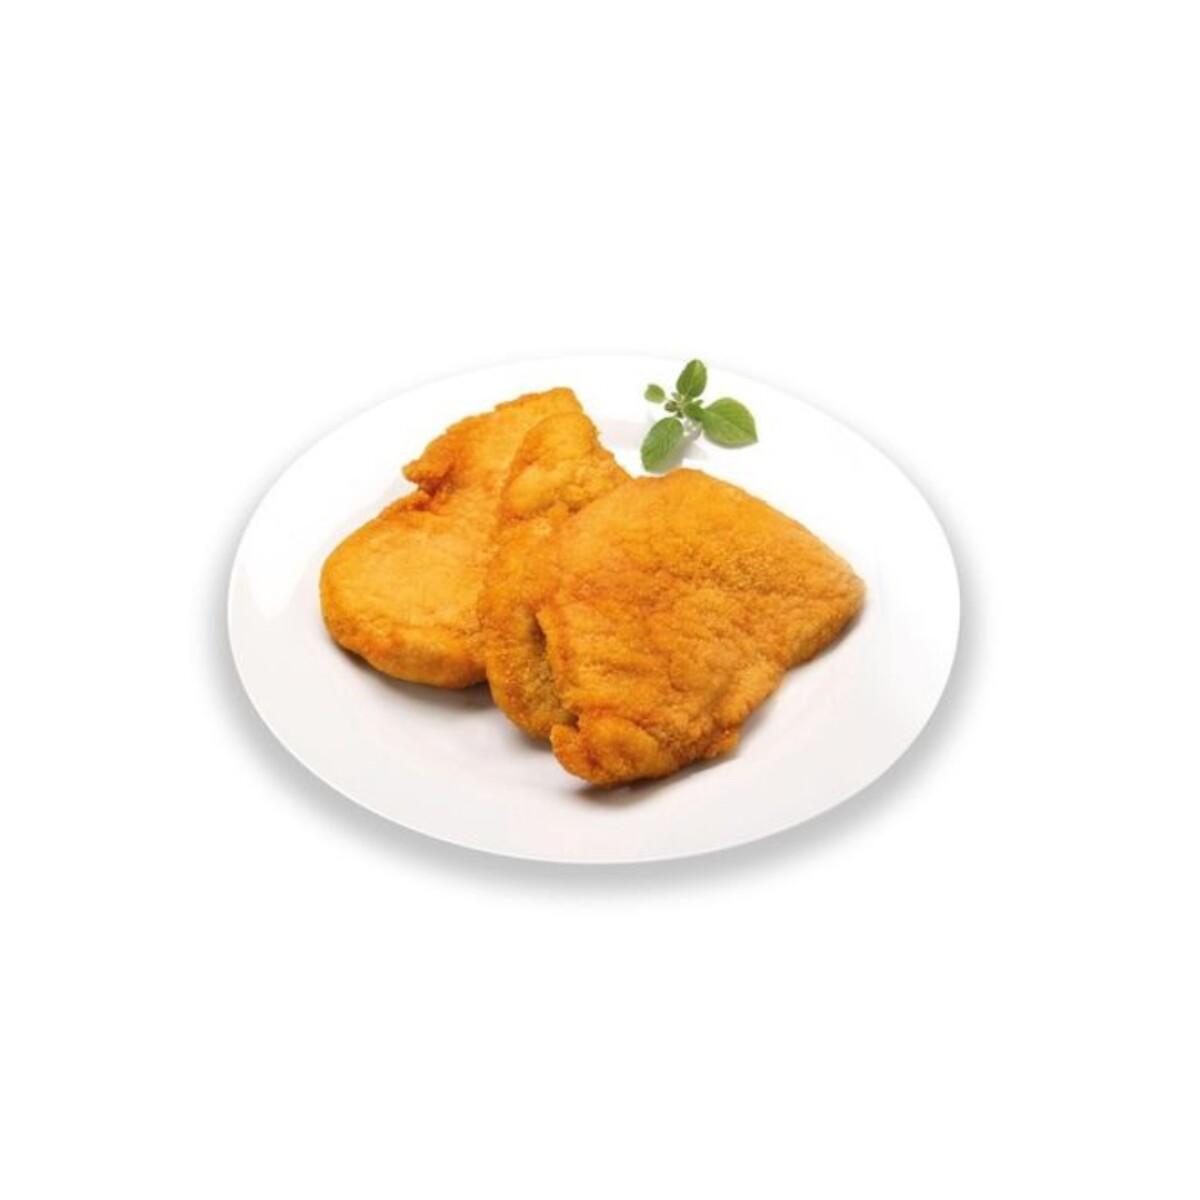 Milanesa de pollo Avícolas del Oeste - 1 kg 